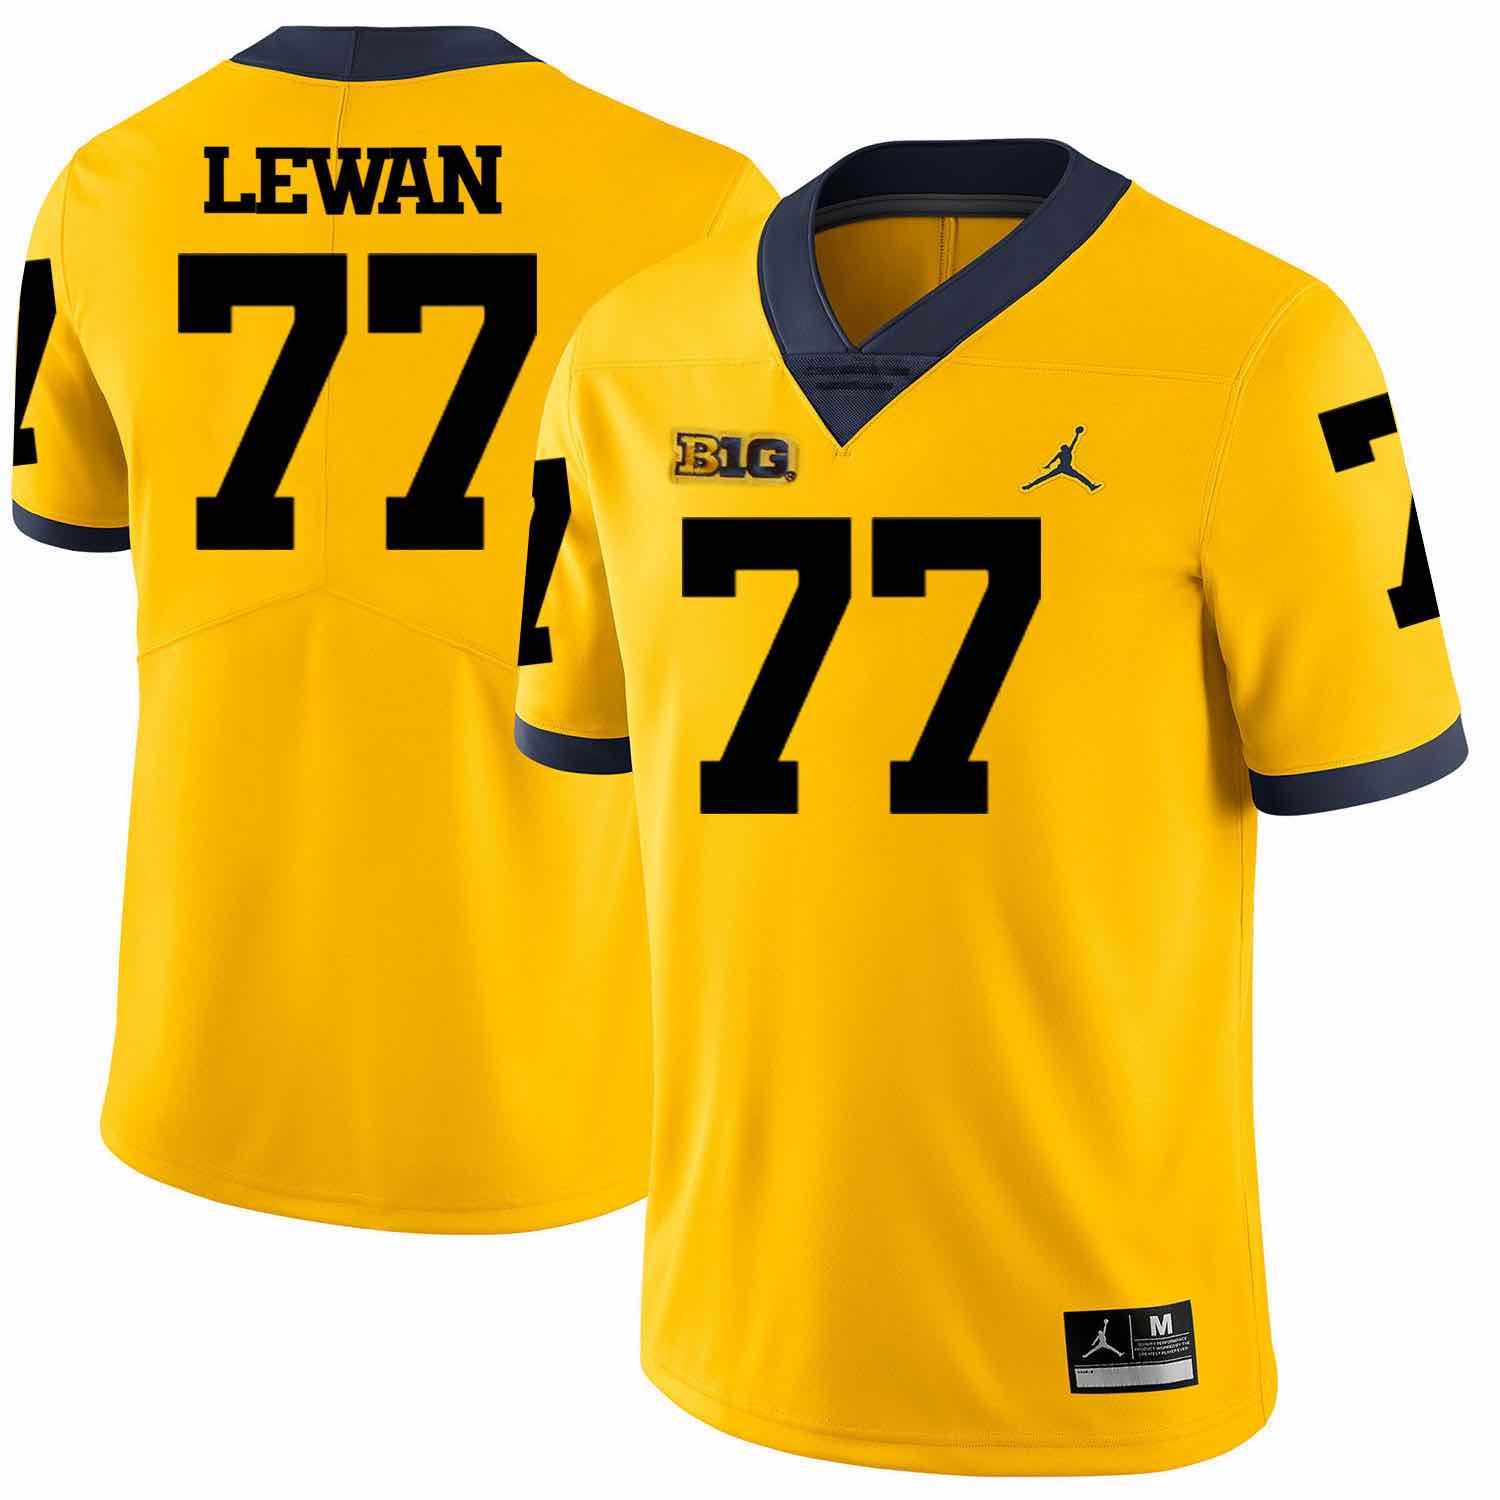 NCAA Michigan Wolverines #77 Lewal Yellow Football Jersey